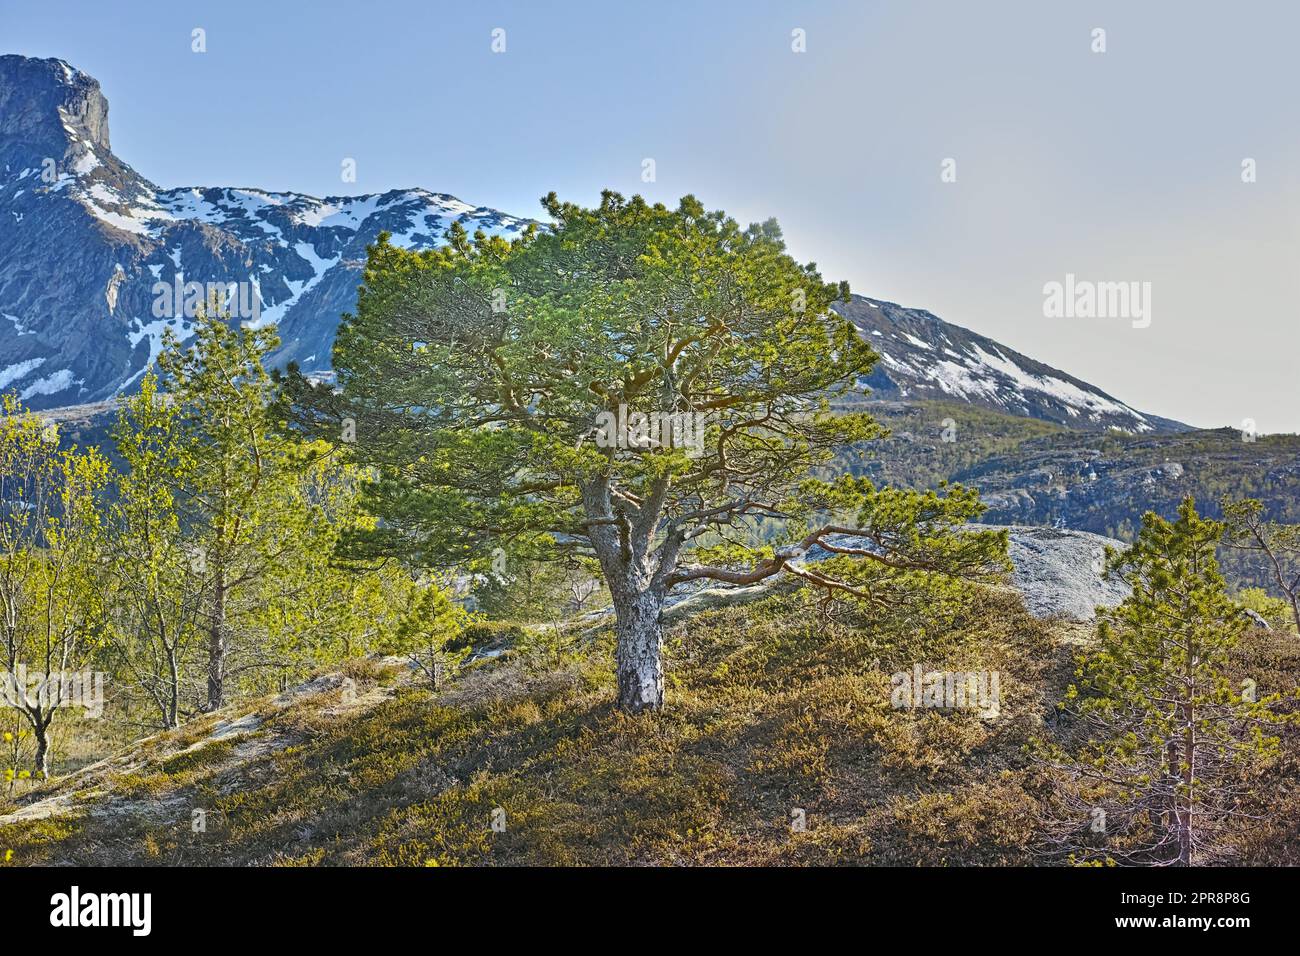 Forêt d'arbres près des montagnes avec la fonte de la neige au début du printemps sur un ciel bleu avec l'espace de copie. Paysage d'un grand arbre avec des feuilles vertes luxuriantes, des branches et des terres d'herbe près d'une montagne rocheuse en Norvège Banque D'Images